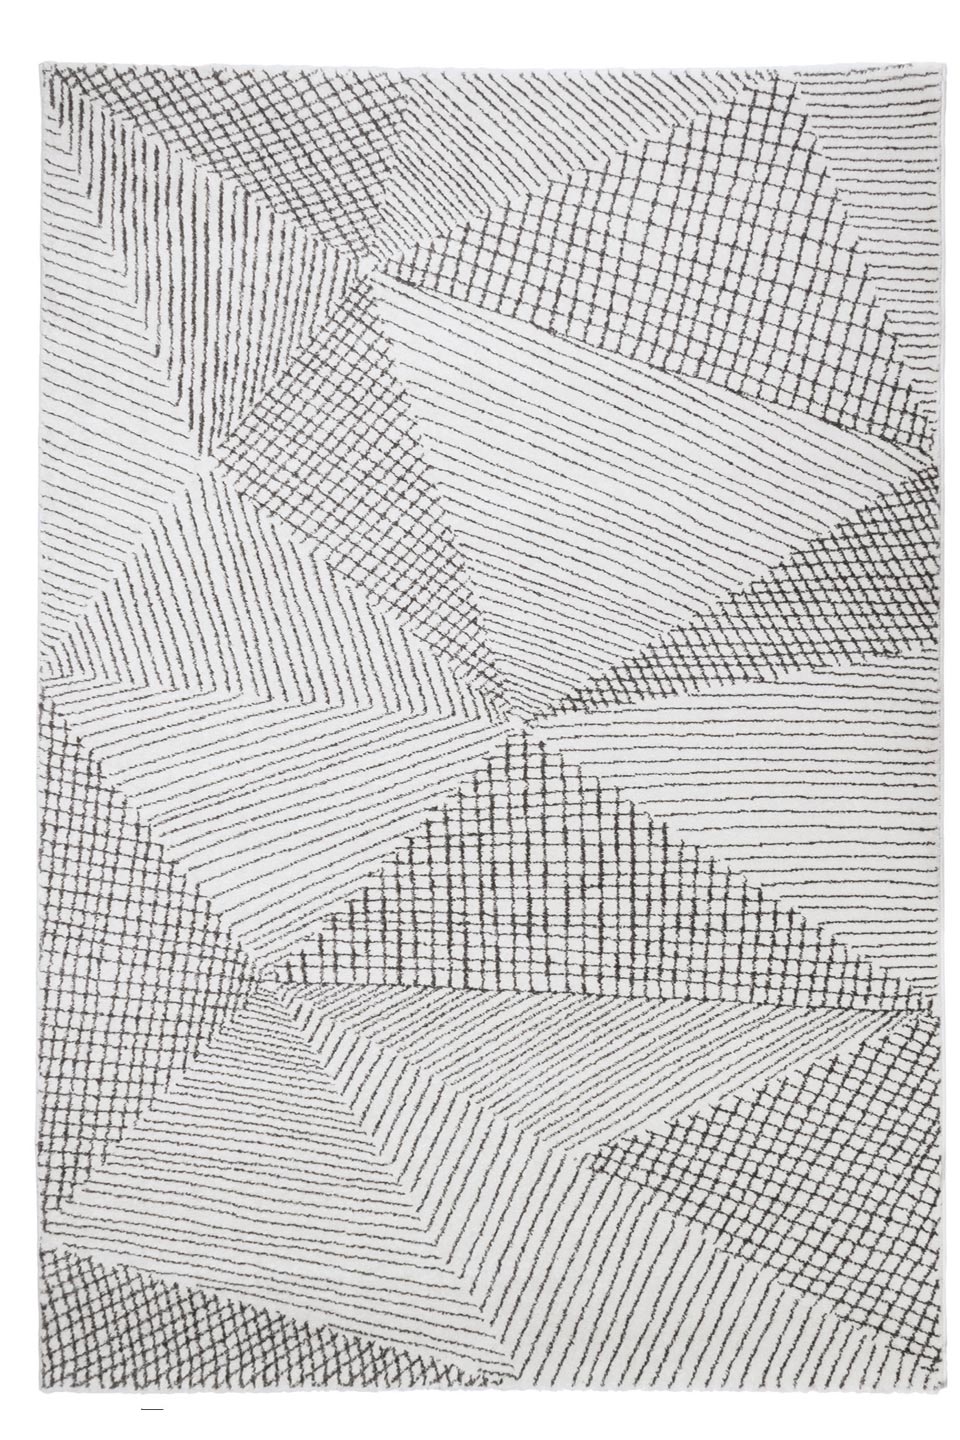 Polymagoo tapis gris à motifs géométriques 135x190. Edito Paris. 